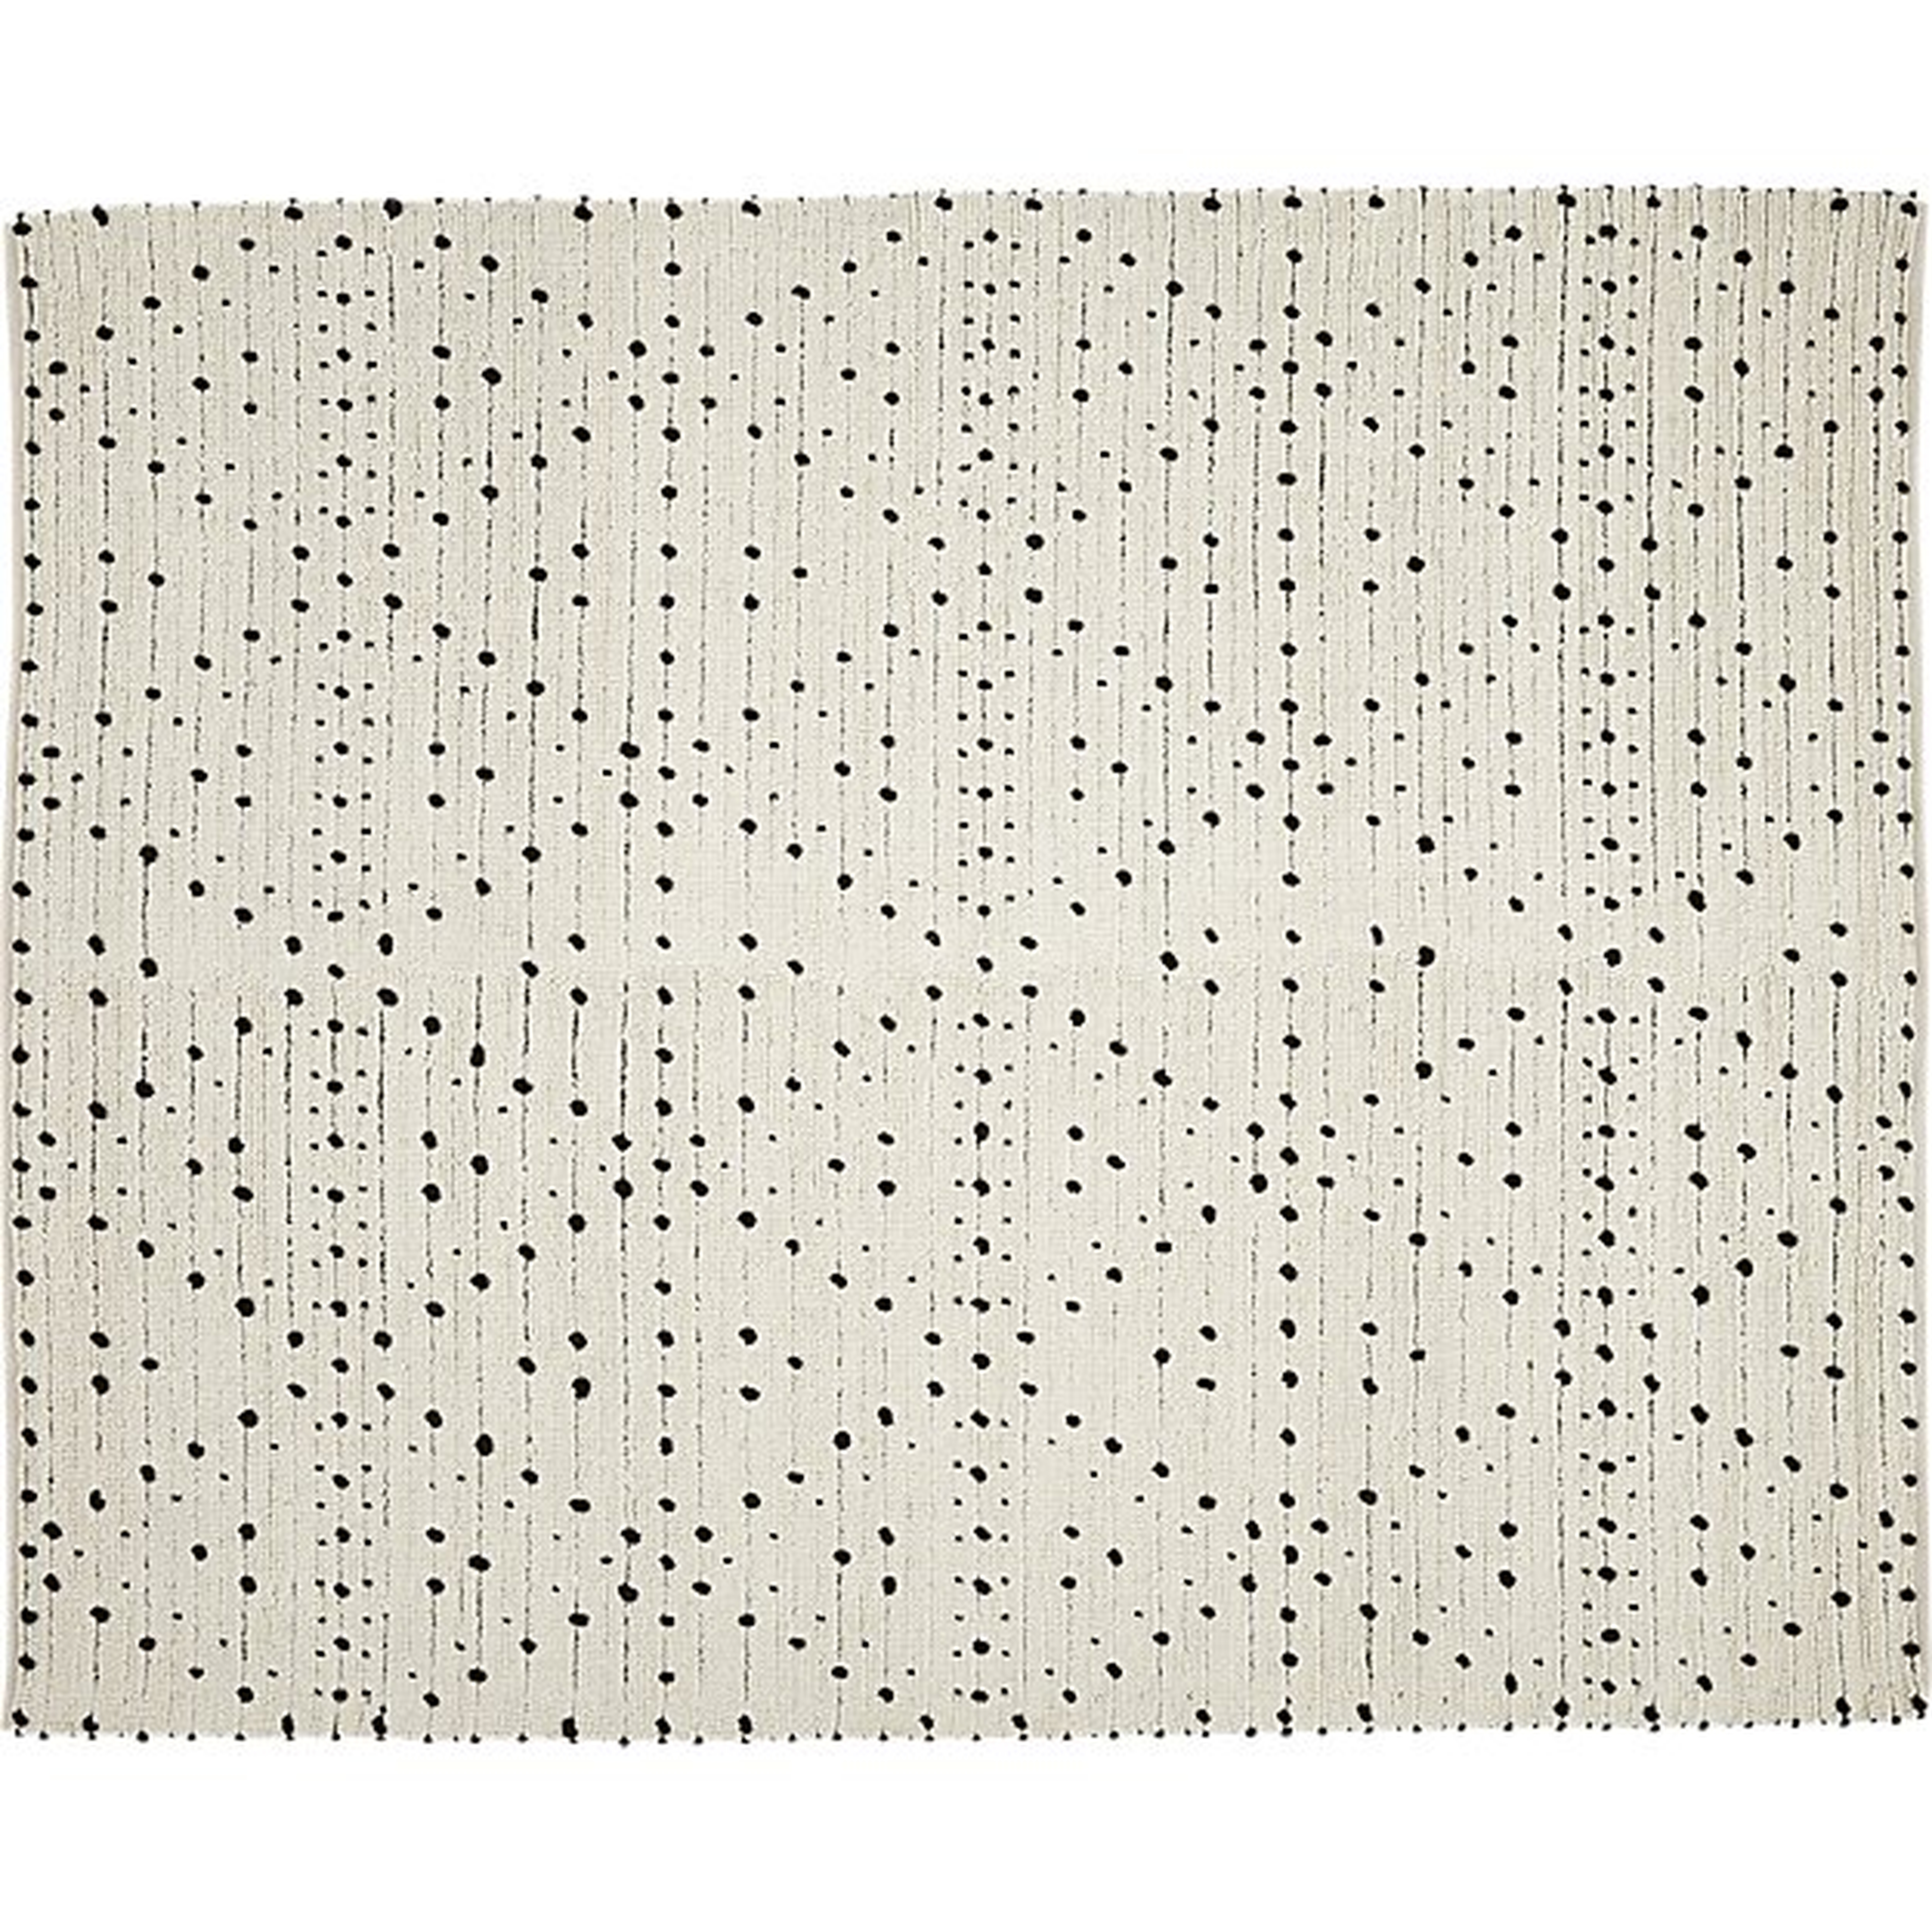 Orville black dot rug 8'x10' - CB2